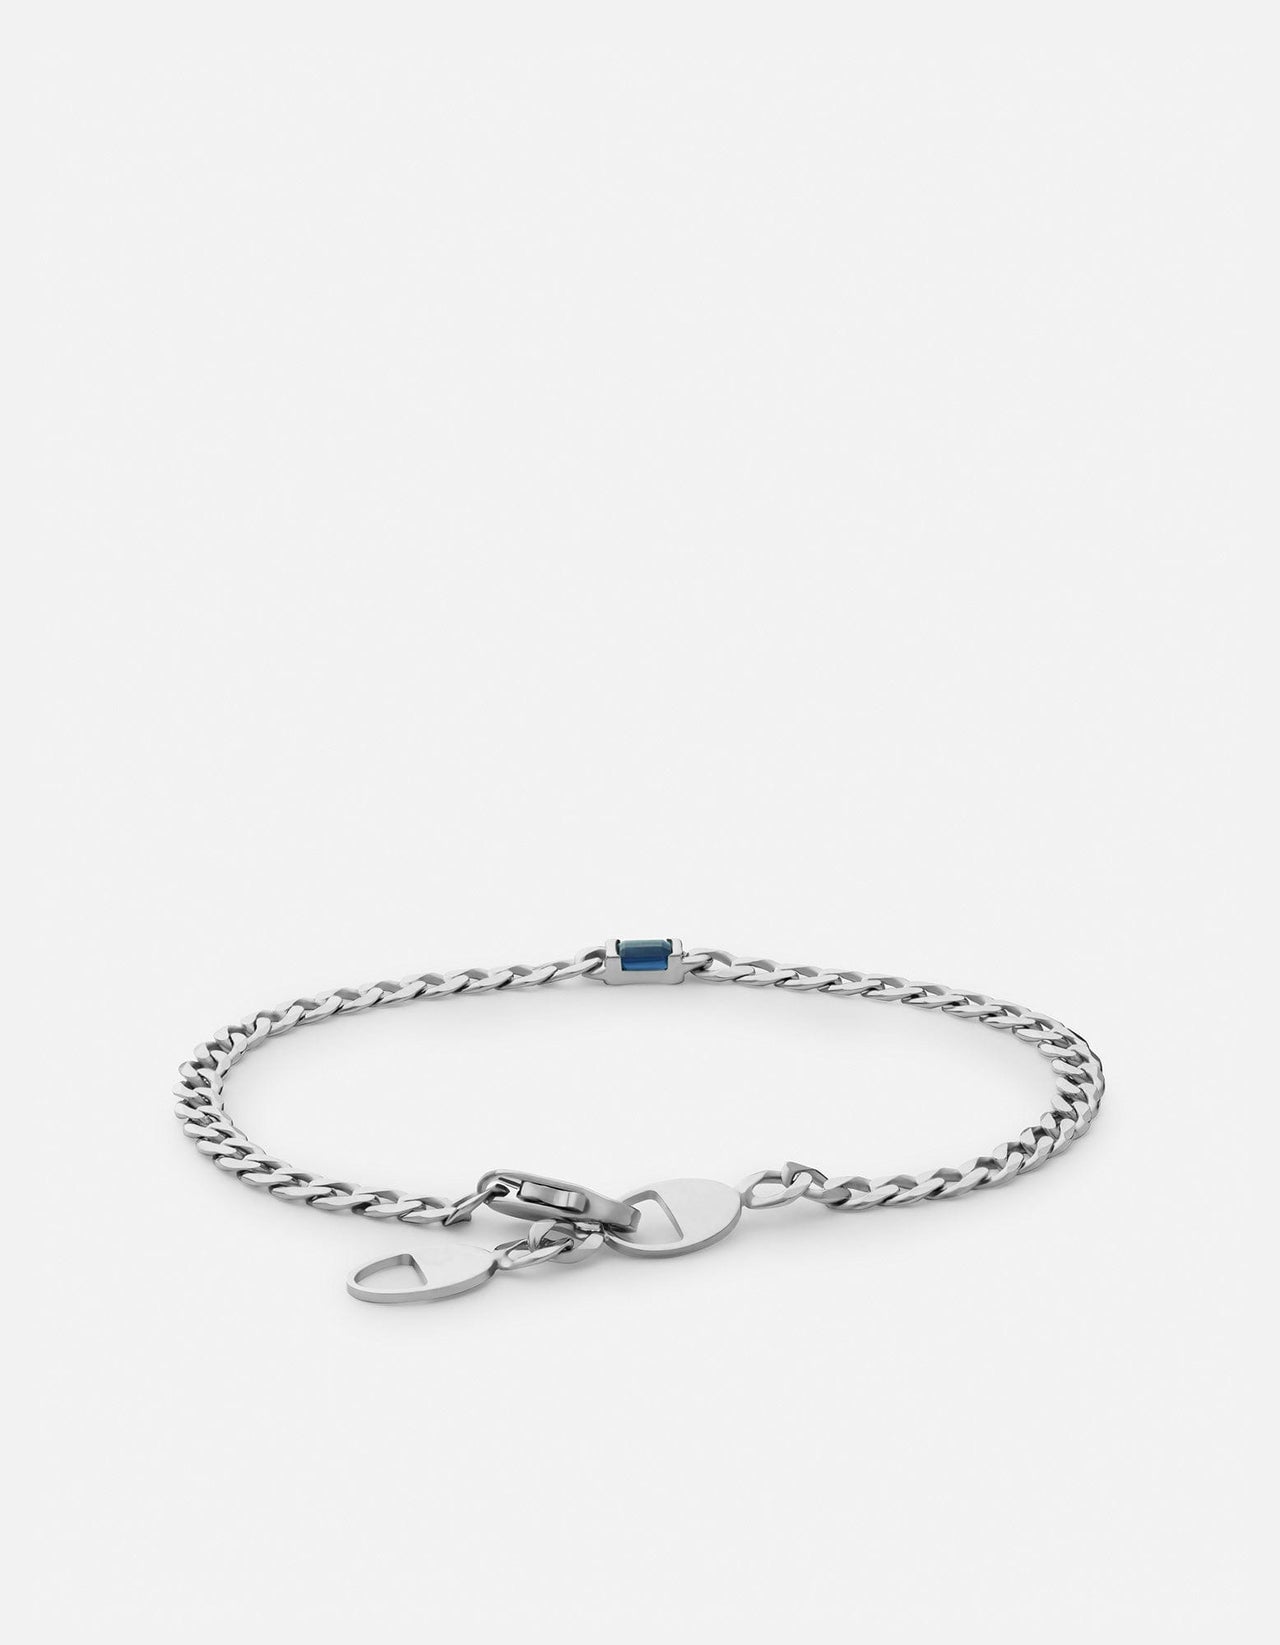 Natural Blue Topaz Clear Round Beads Bracelet 7mm 8mm 9mm Blue Topaz Jewelry  Women Men Cube Beads Bracelet Fashion AAAAAAA - AliExpress